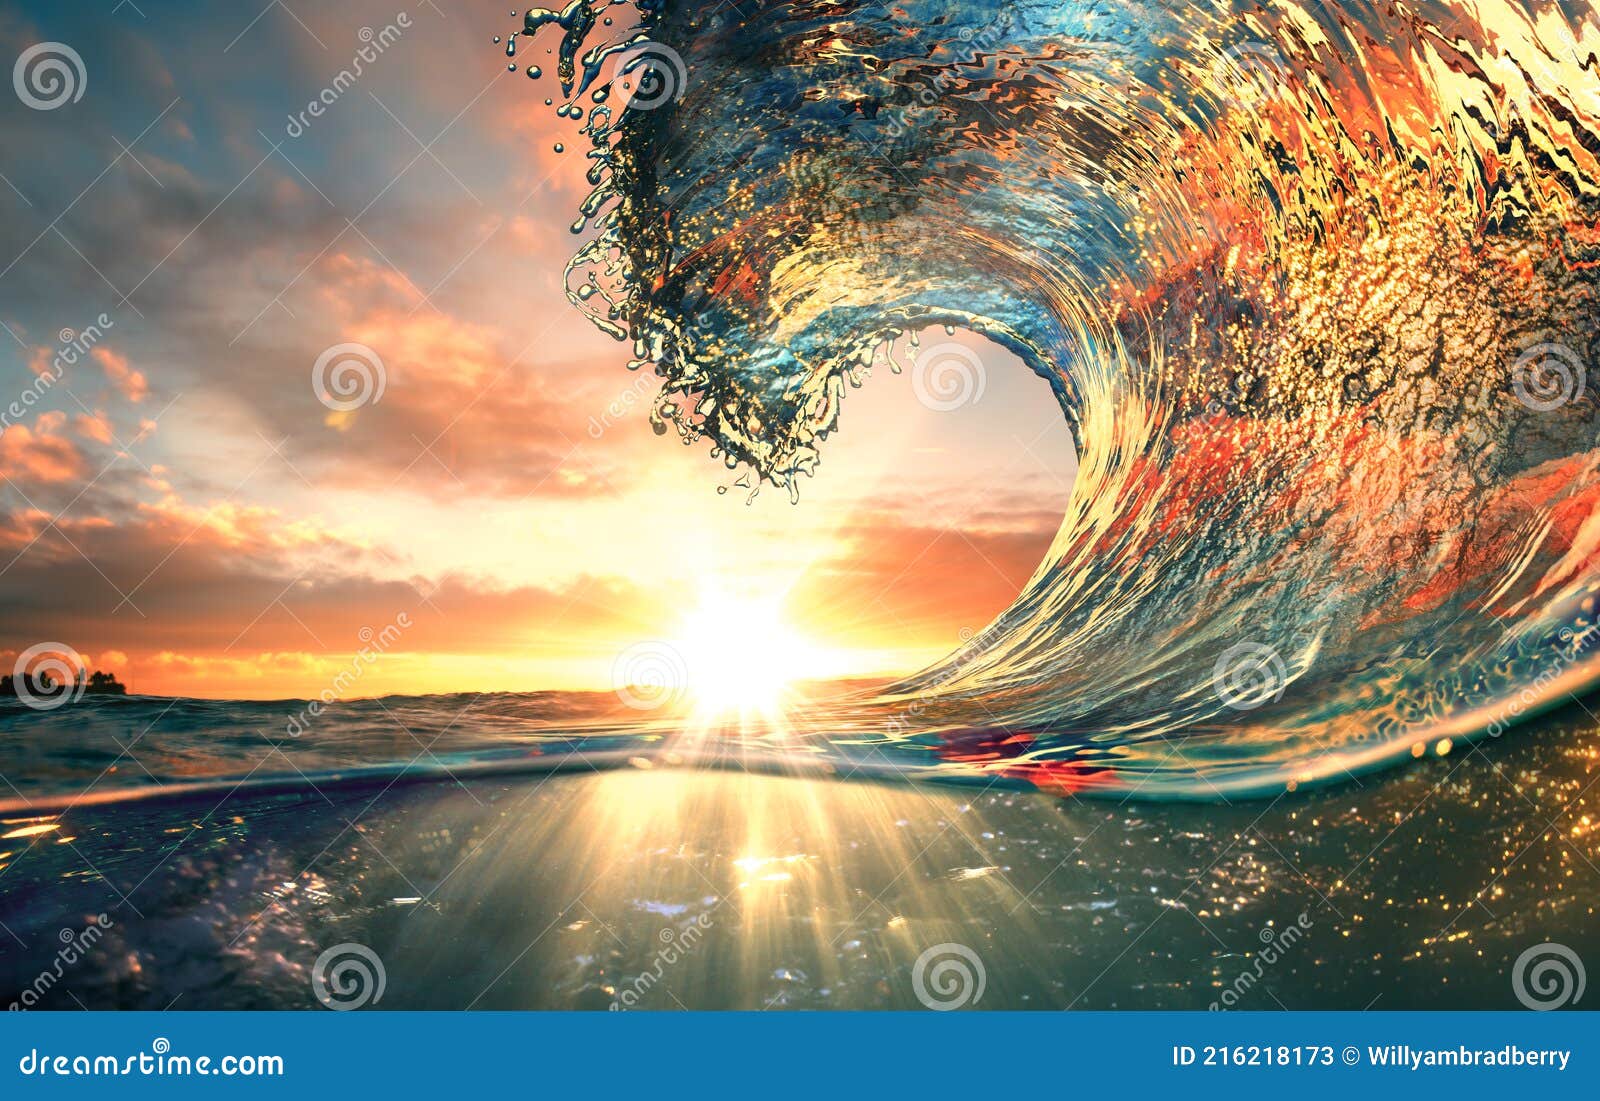 sunset ocean surfing wave lip against sunlight